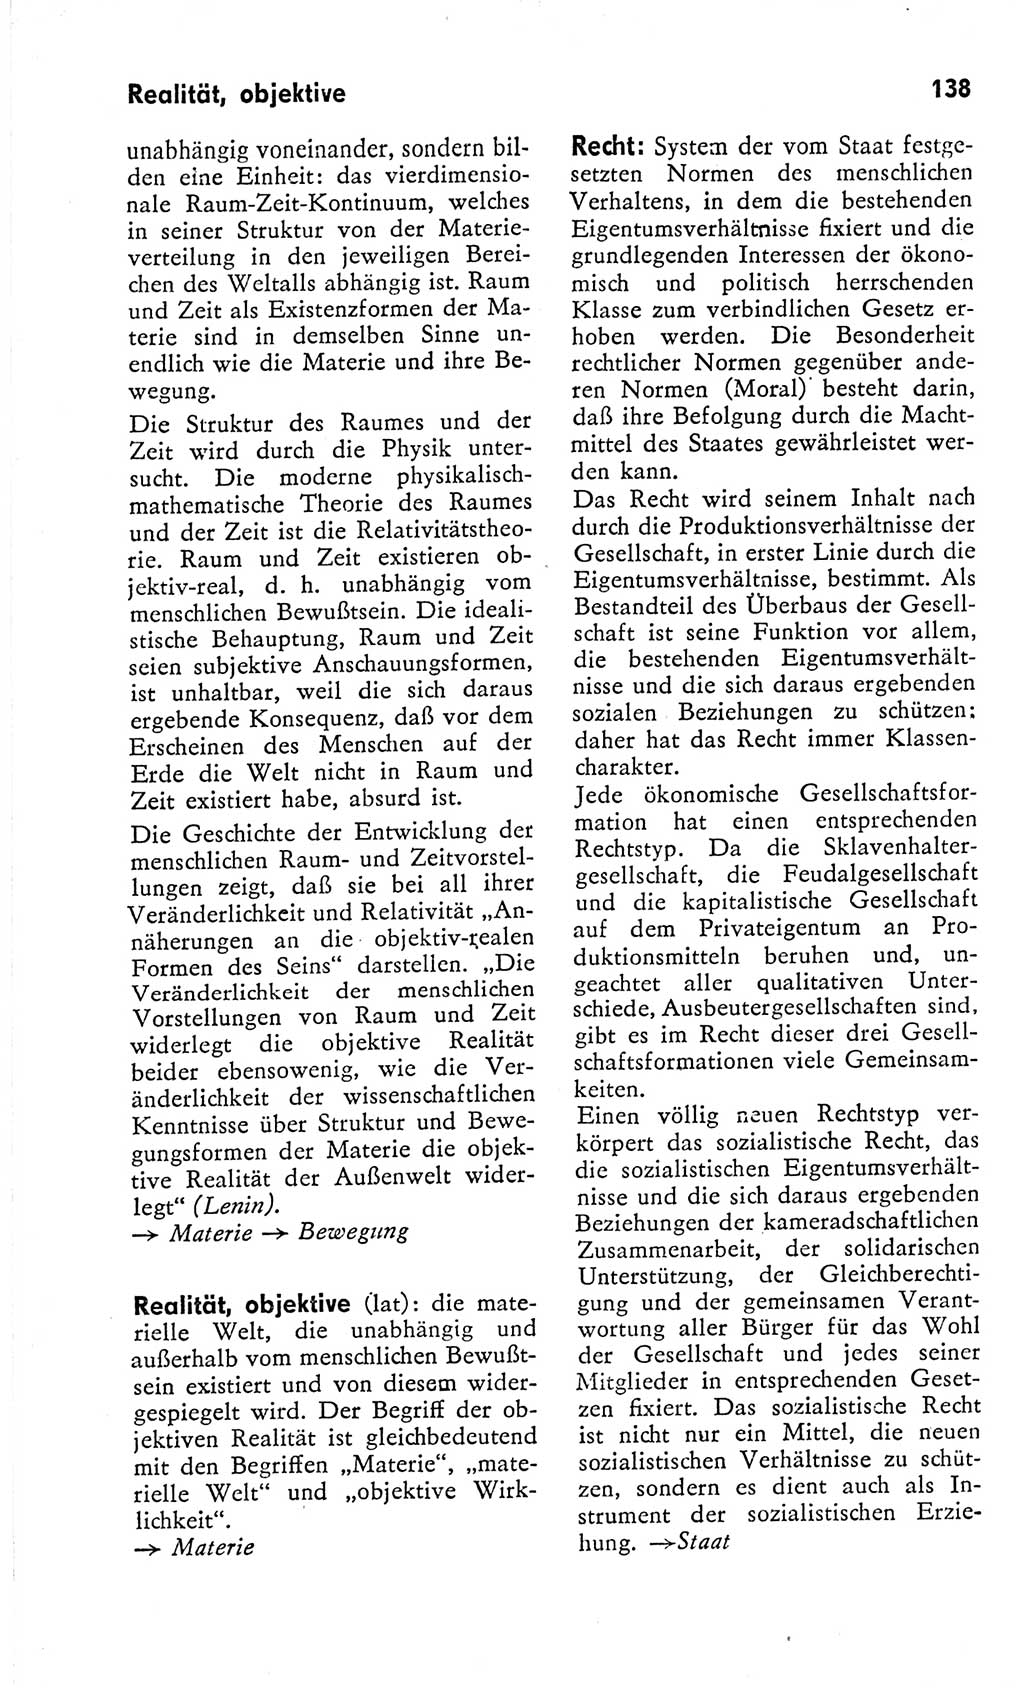 Kleines Wörterbuch der marxistisch-leninistischen Philosophie [Deutsche Demokratische Republik (DDR)] 1966, Seite 138 (Kl. Wb. ML Phil. DDR 1966, S. 138)